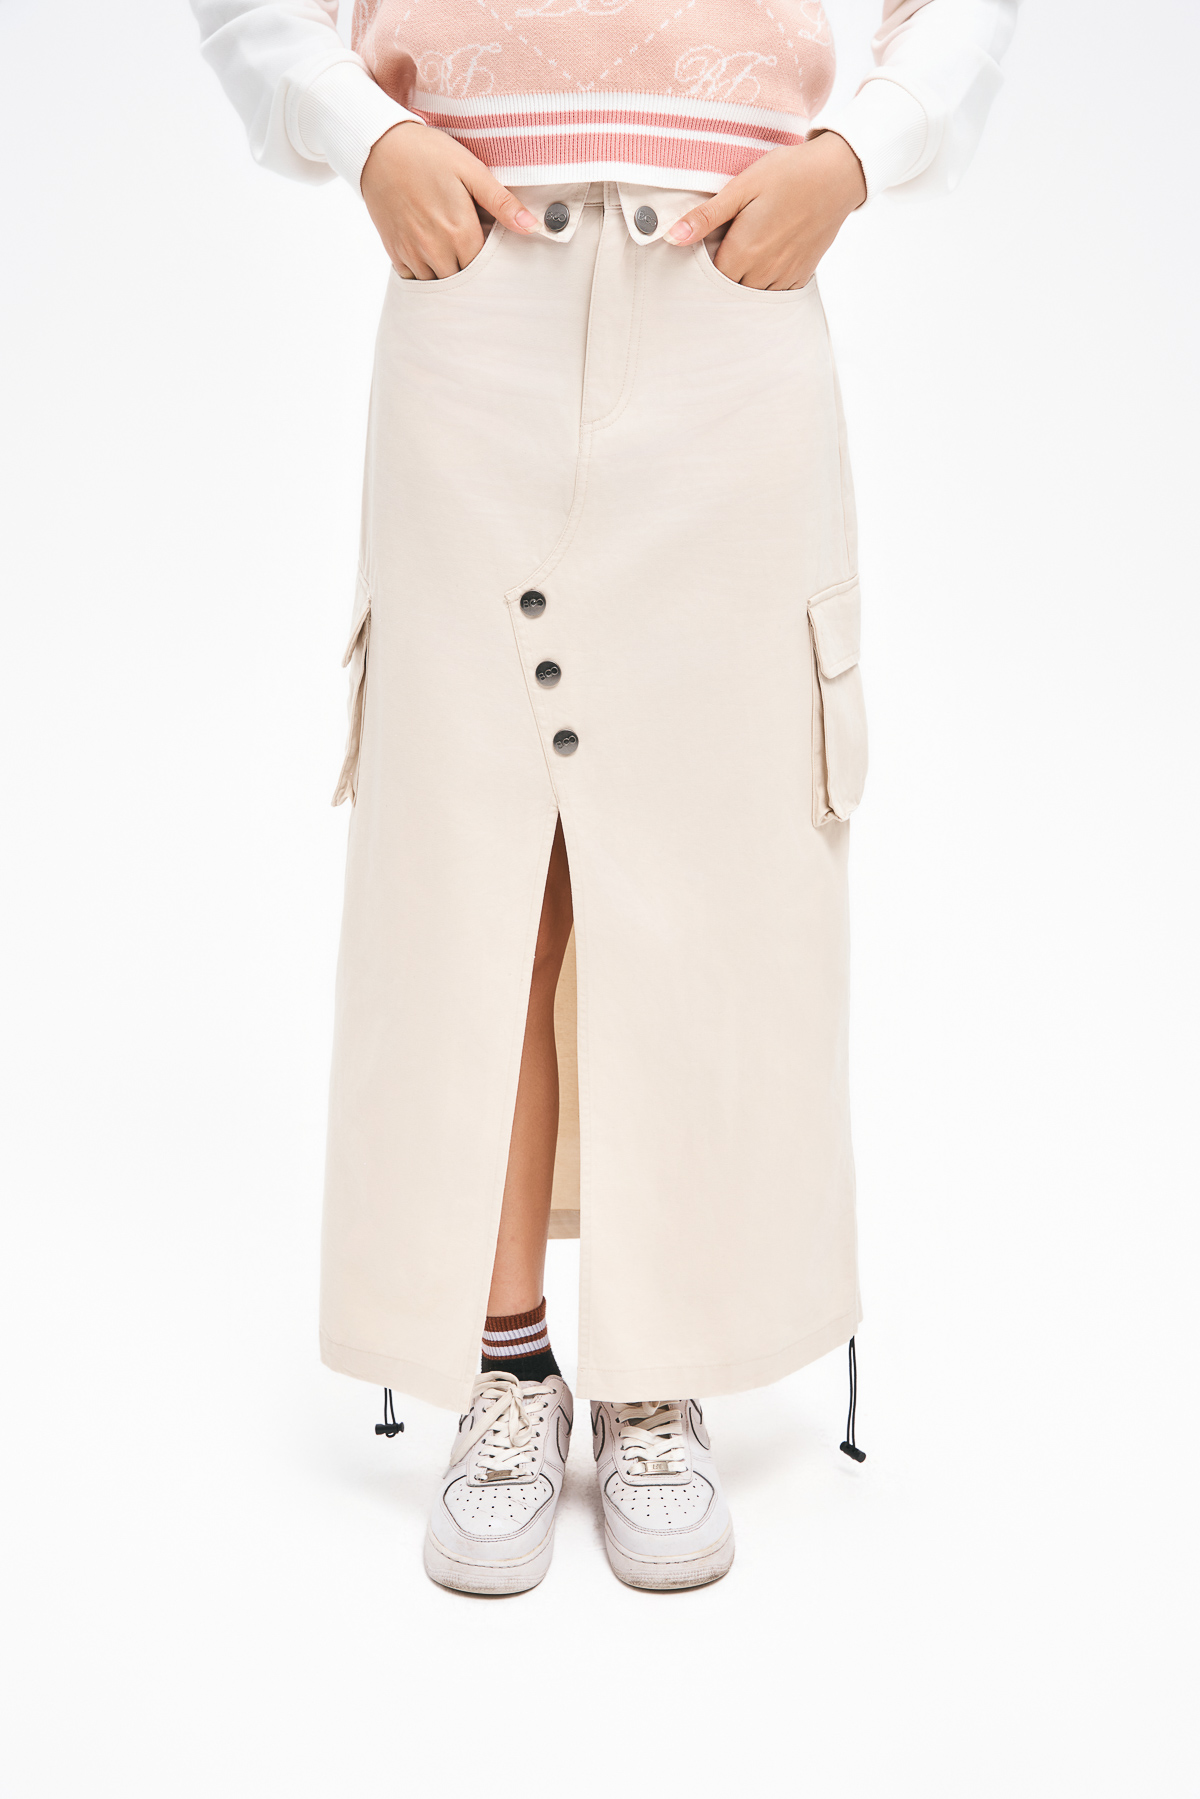 Chân váy midi đen tùng chữ A đắp chéo phối nơ CV06-25 | Thời trang công sở  K&K Fashion